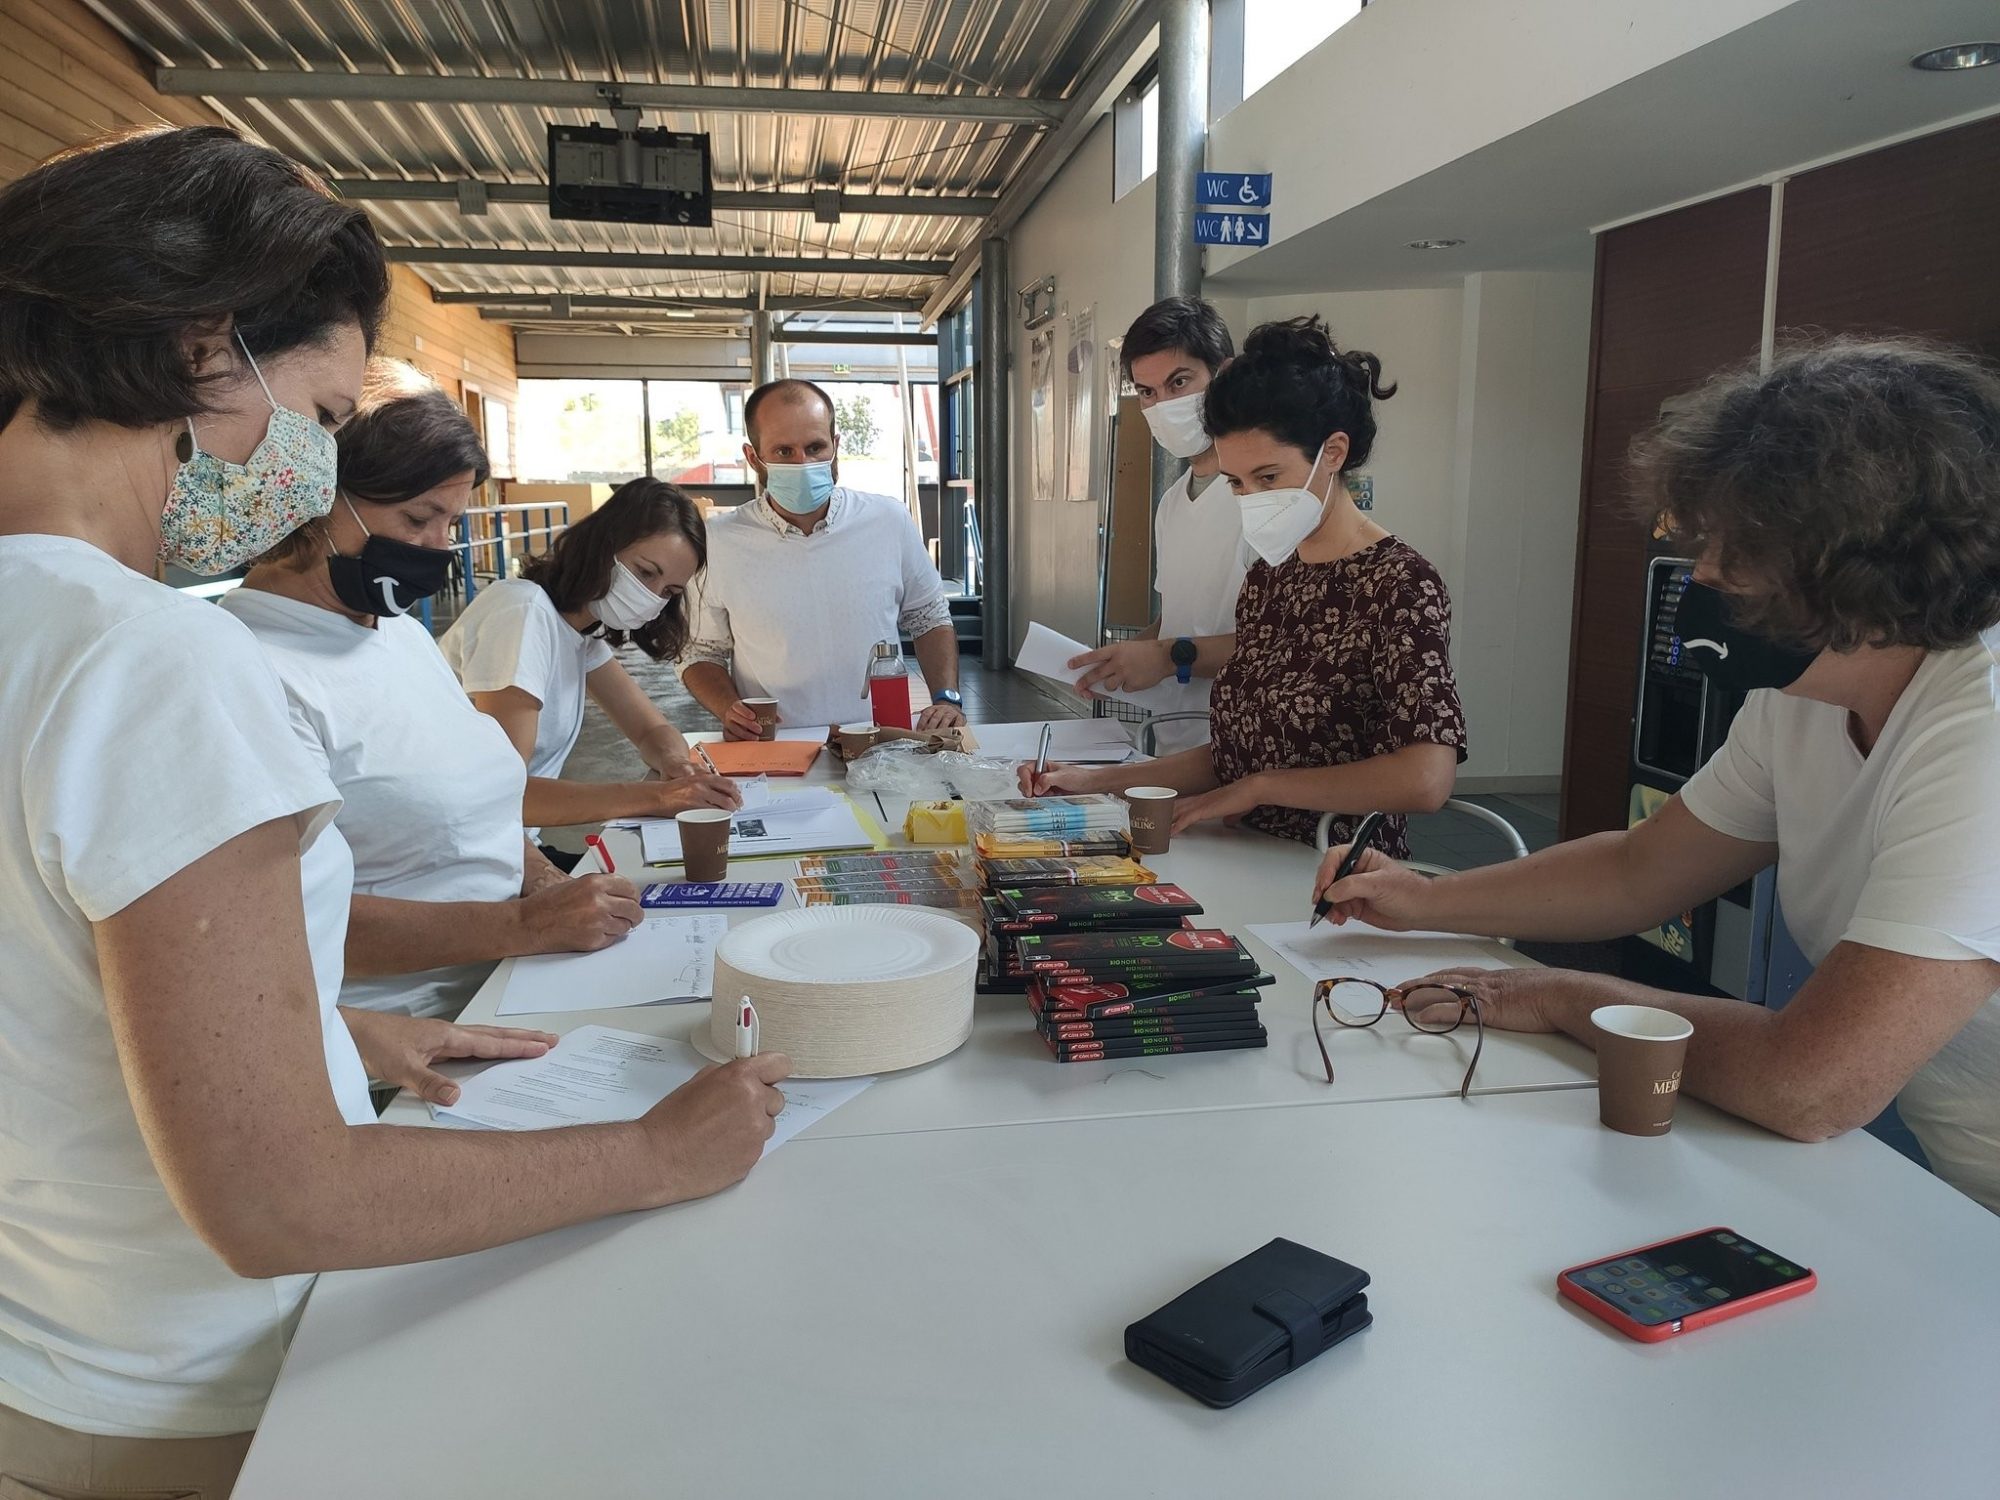 Les ateliers DIY sont animés par des étudiants de 5ème année dans le cadre du Service Sanitaire @ Université de Poitiers